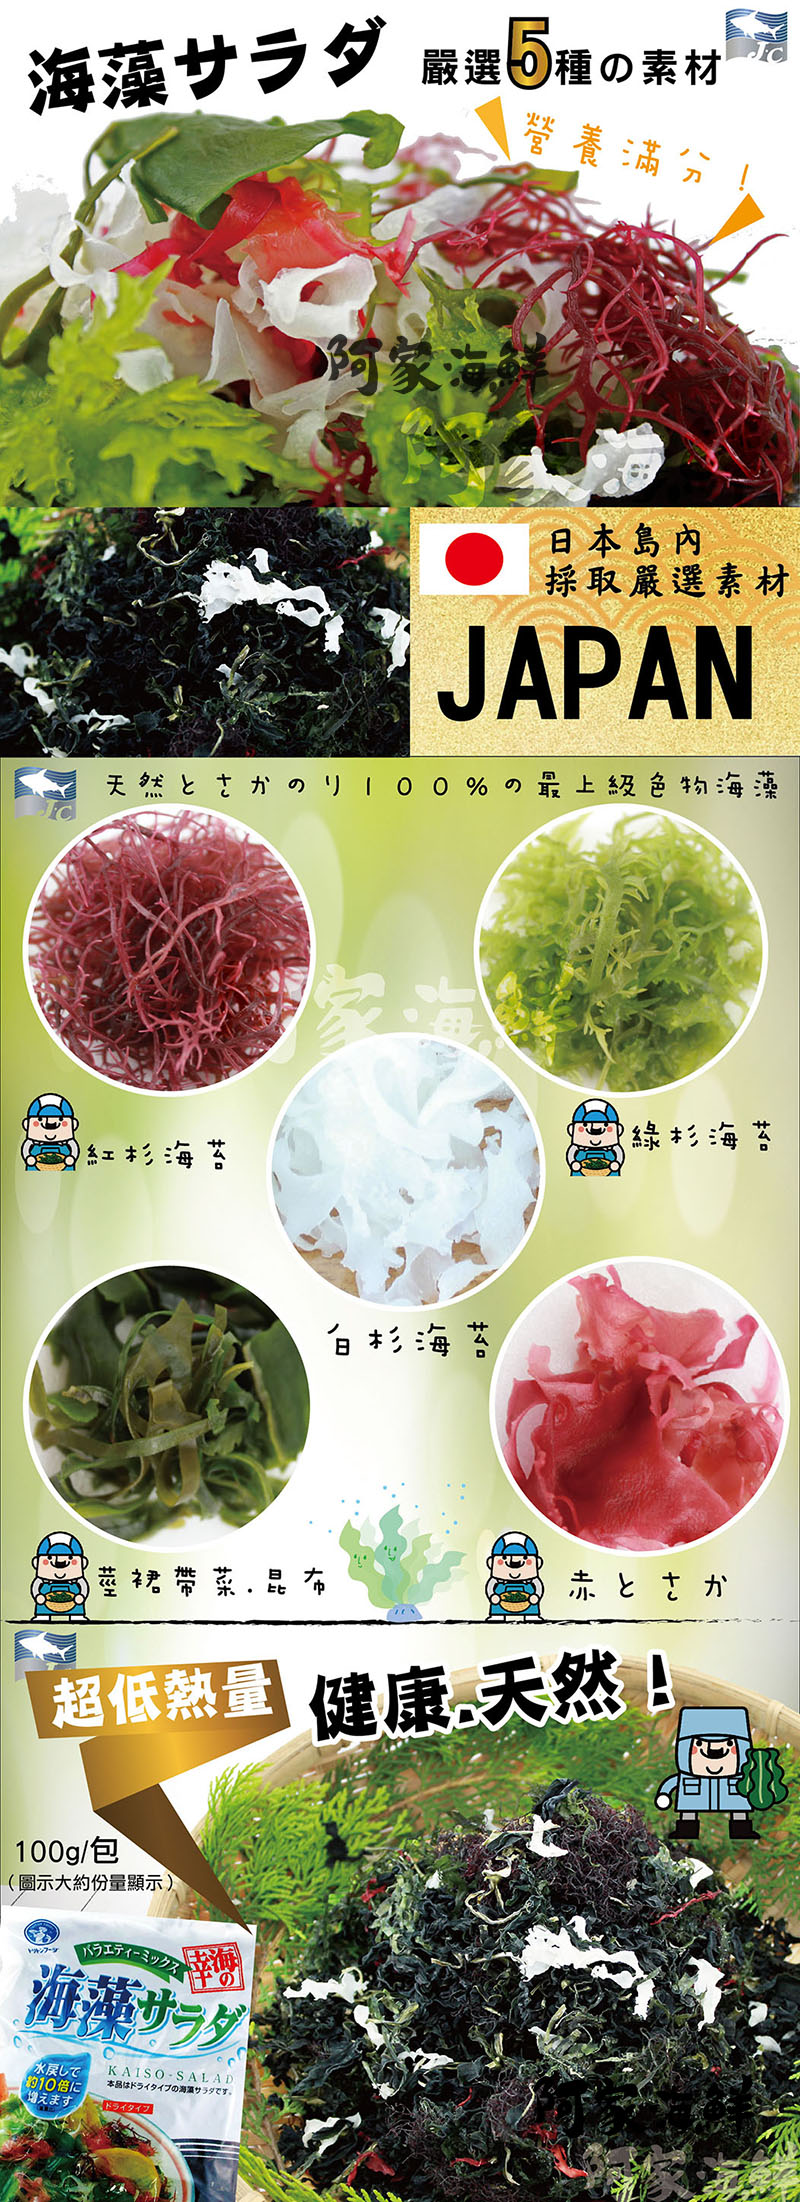 日本海藻沙拉